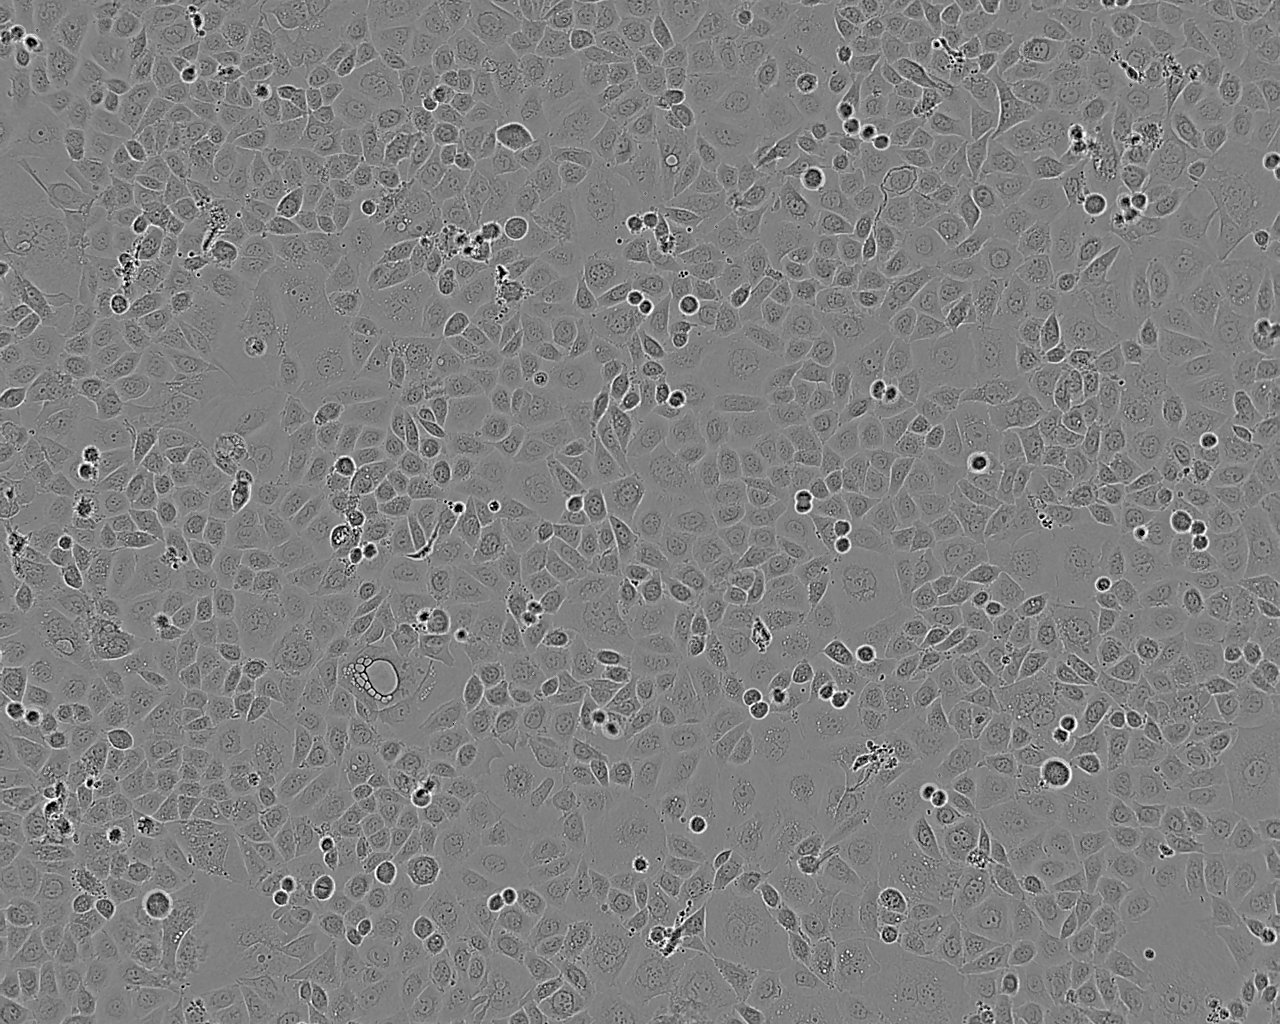 TE-9 epithelioid cells人食管癌细胞系